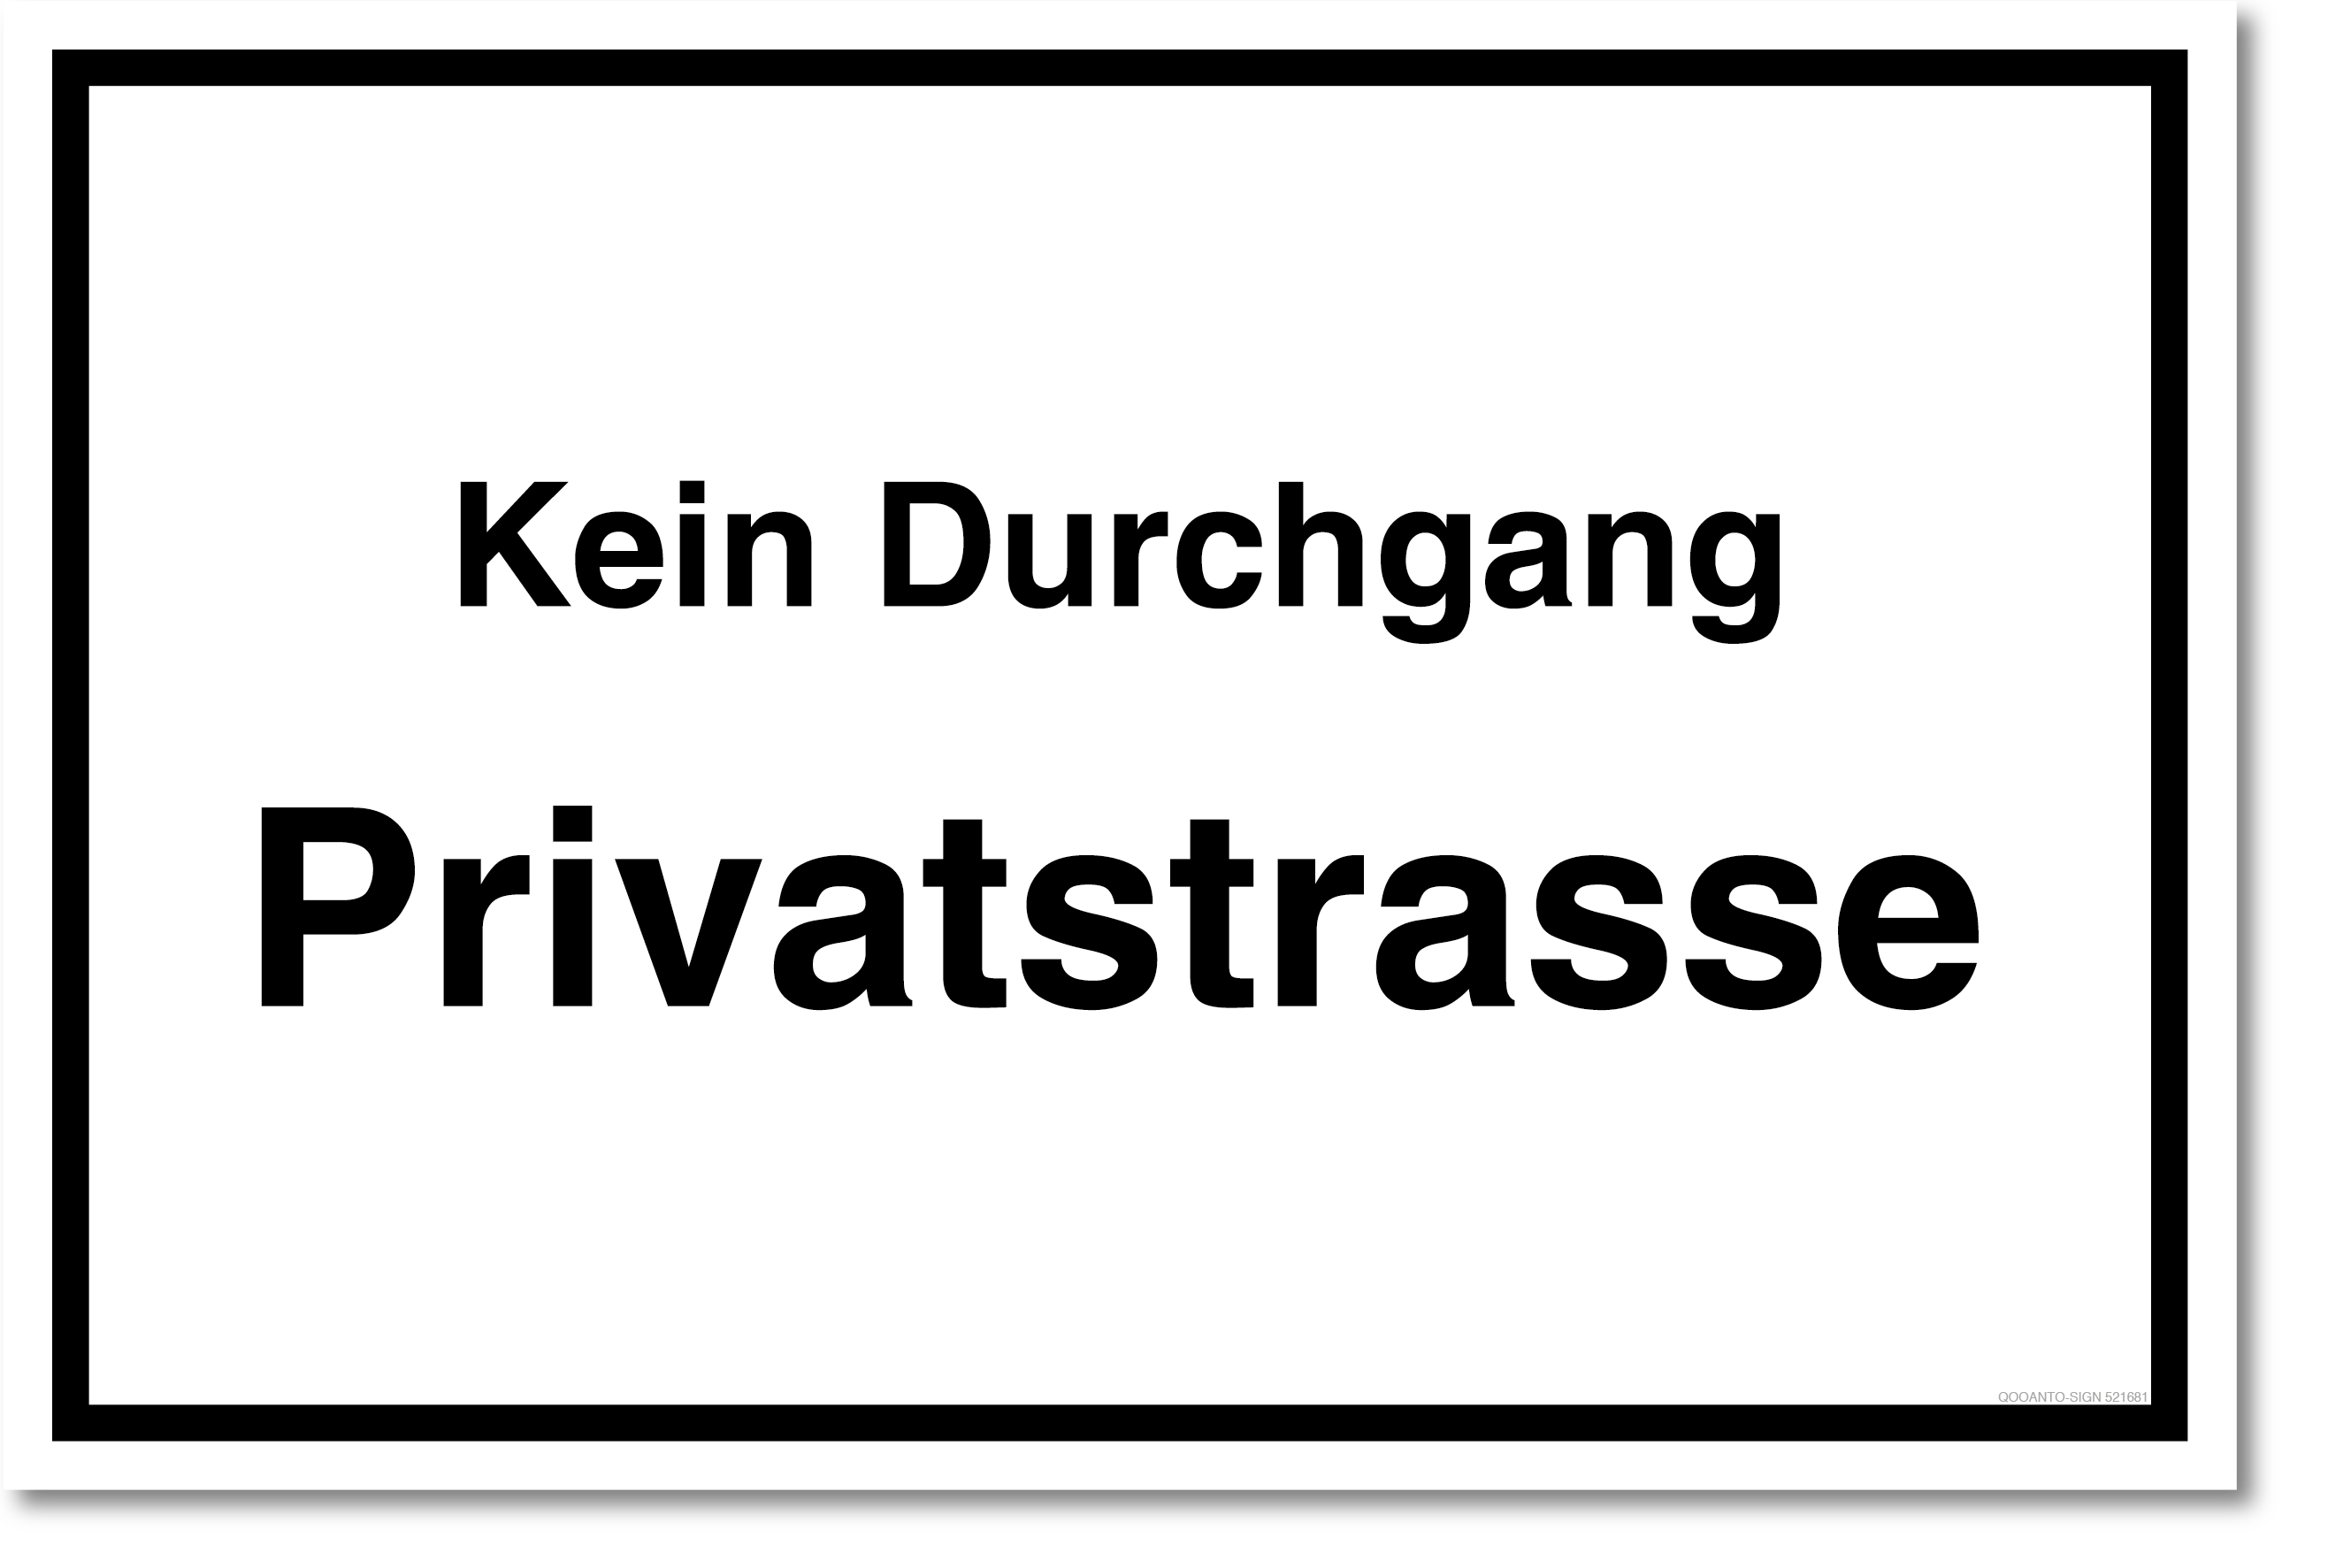 Privatstrasse Schild, Privatstrasse Kein Durchgang, aus Alu-Verbund, mit UV-Schutz